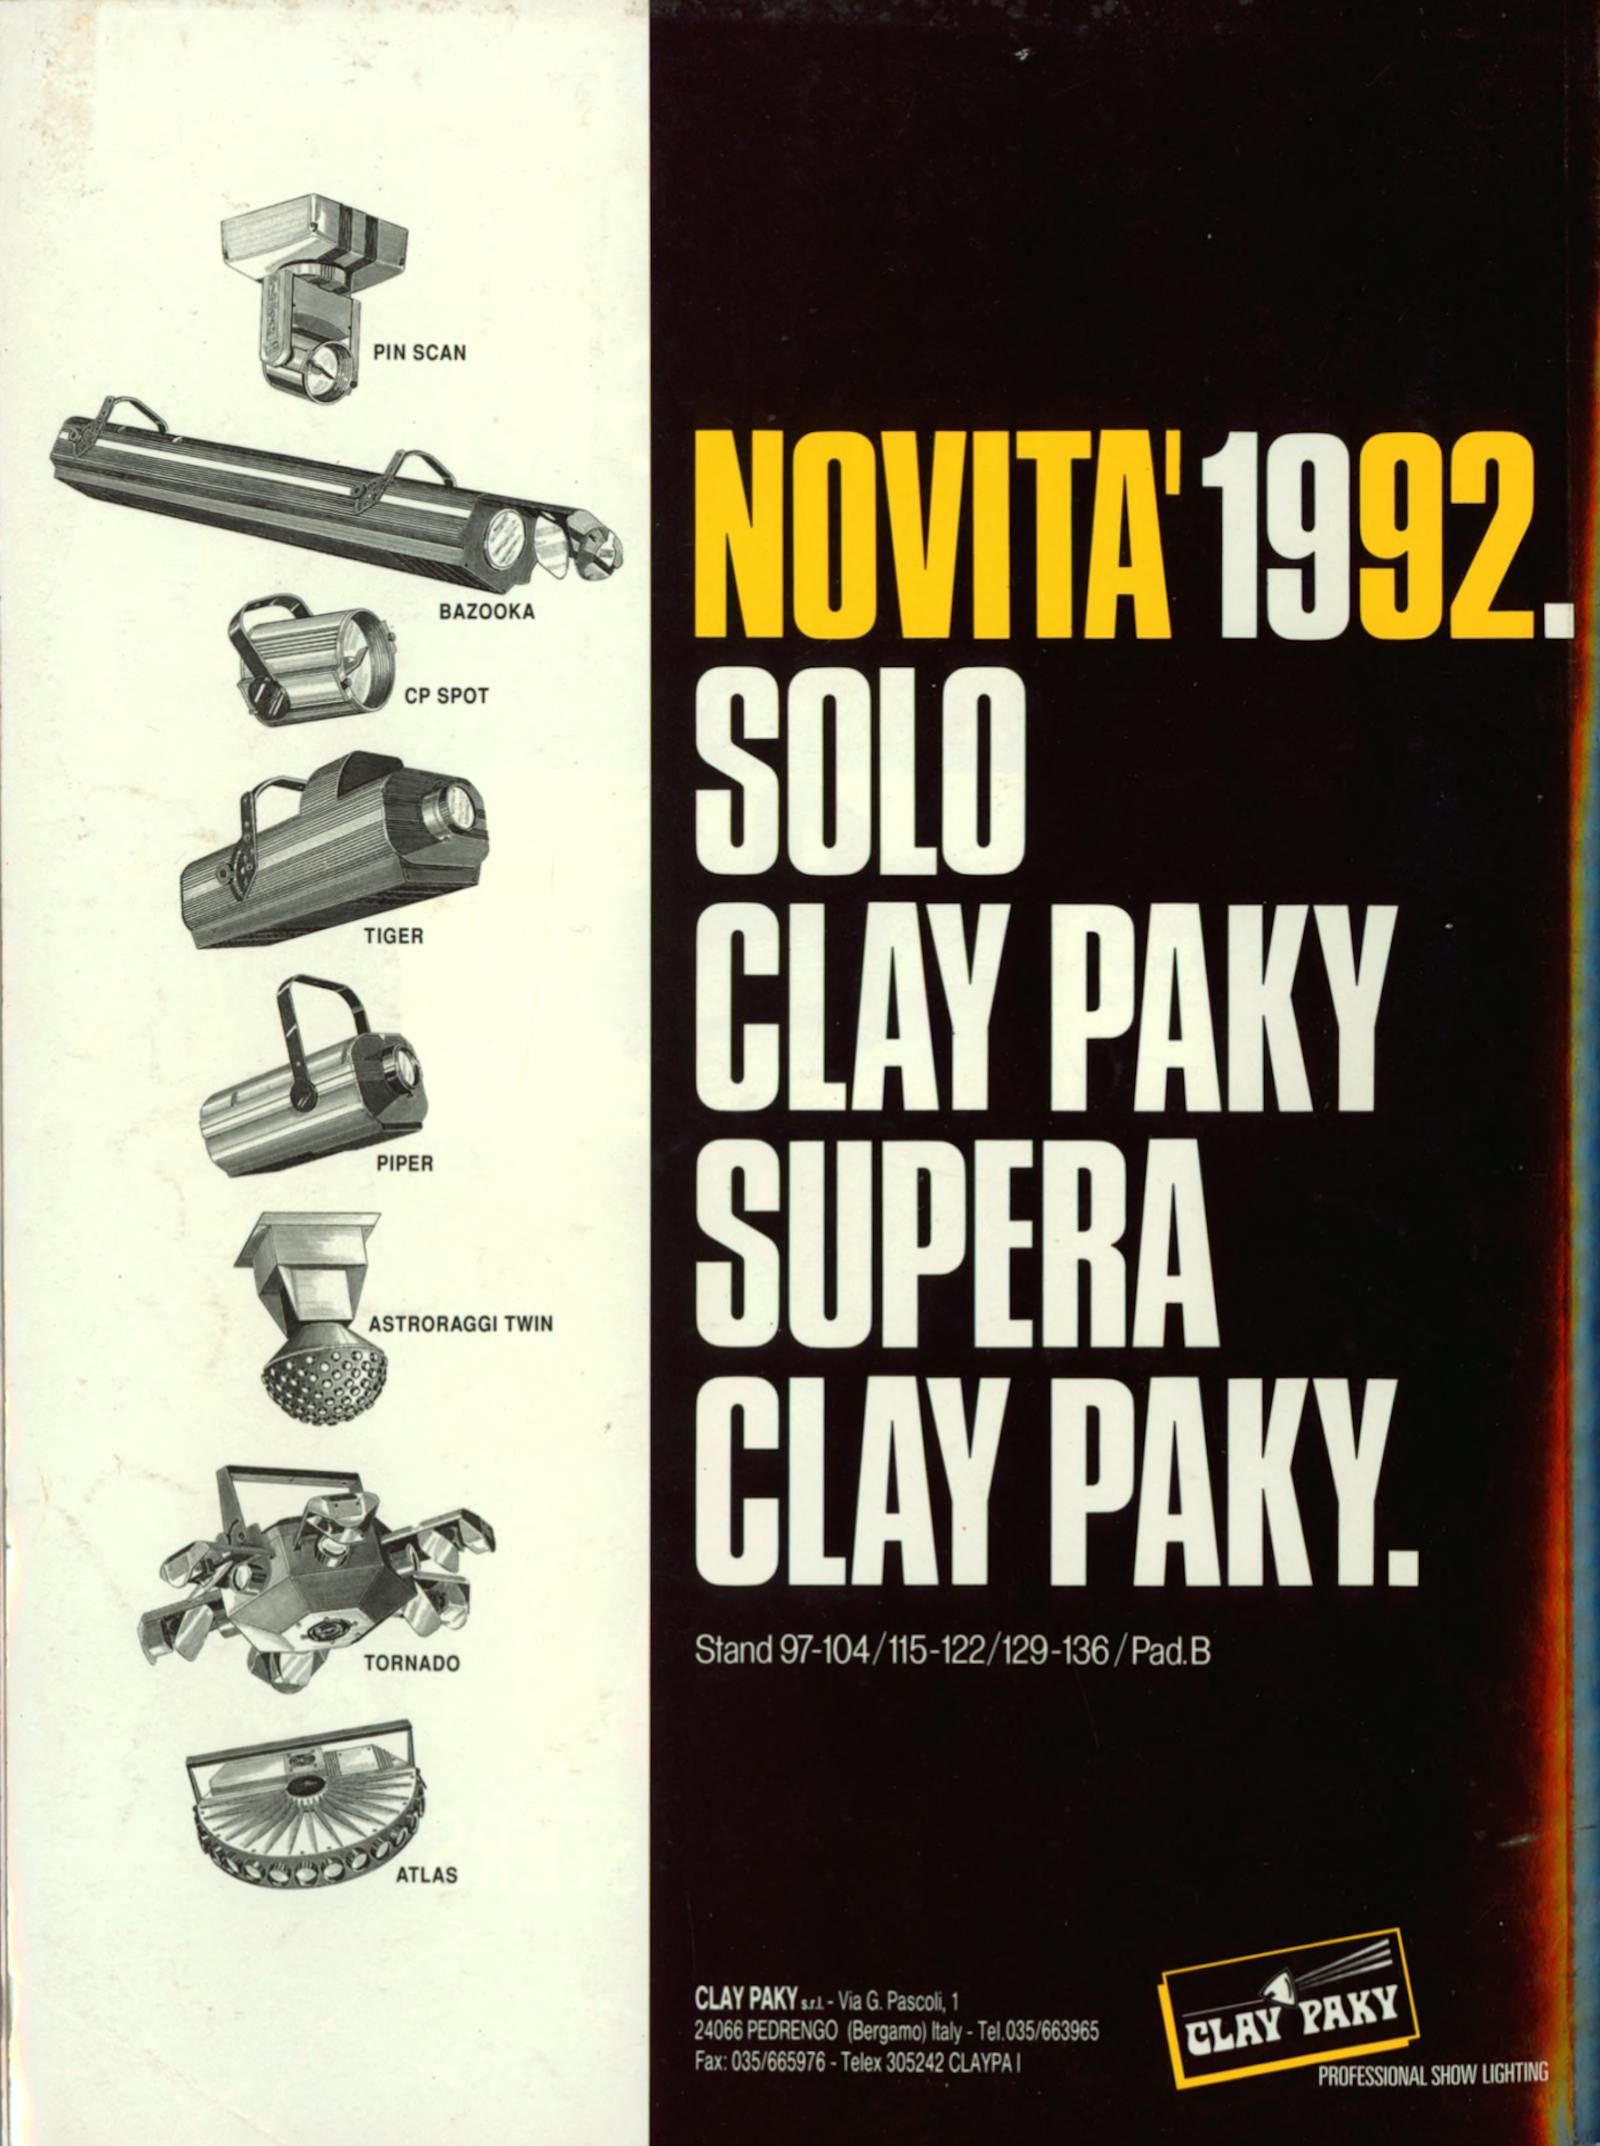 Pubblicità Clay Paky: Solo Clay Paky supera Clay Paky